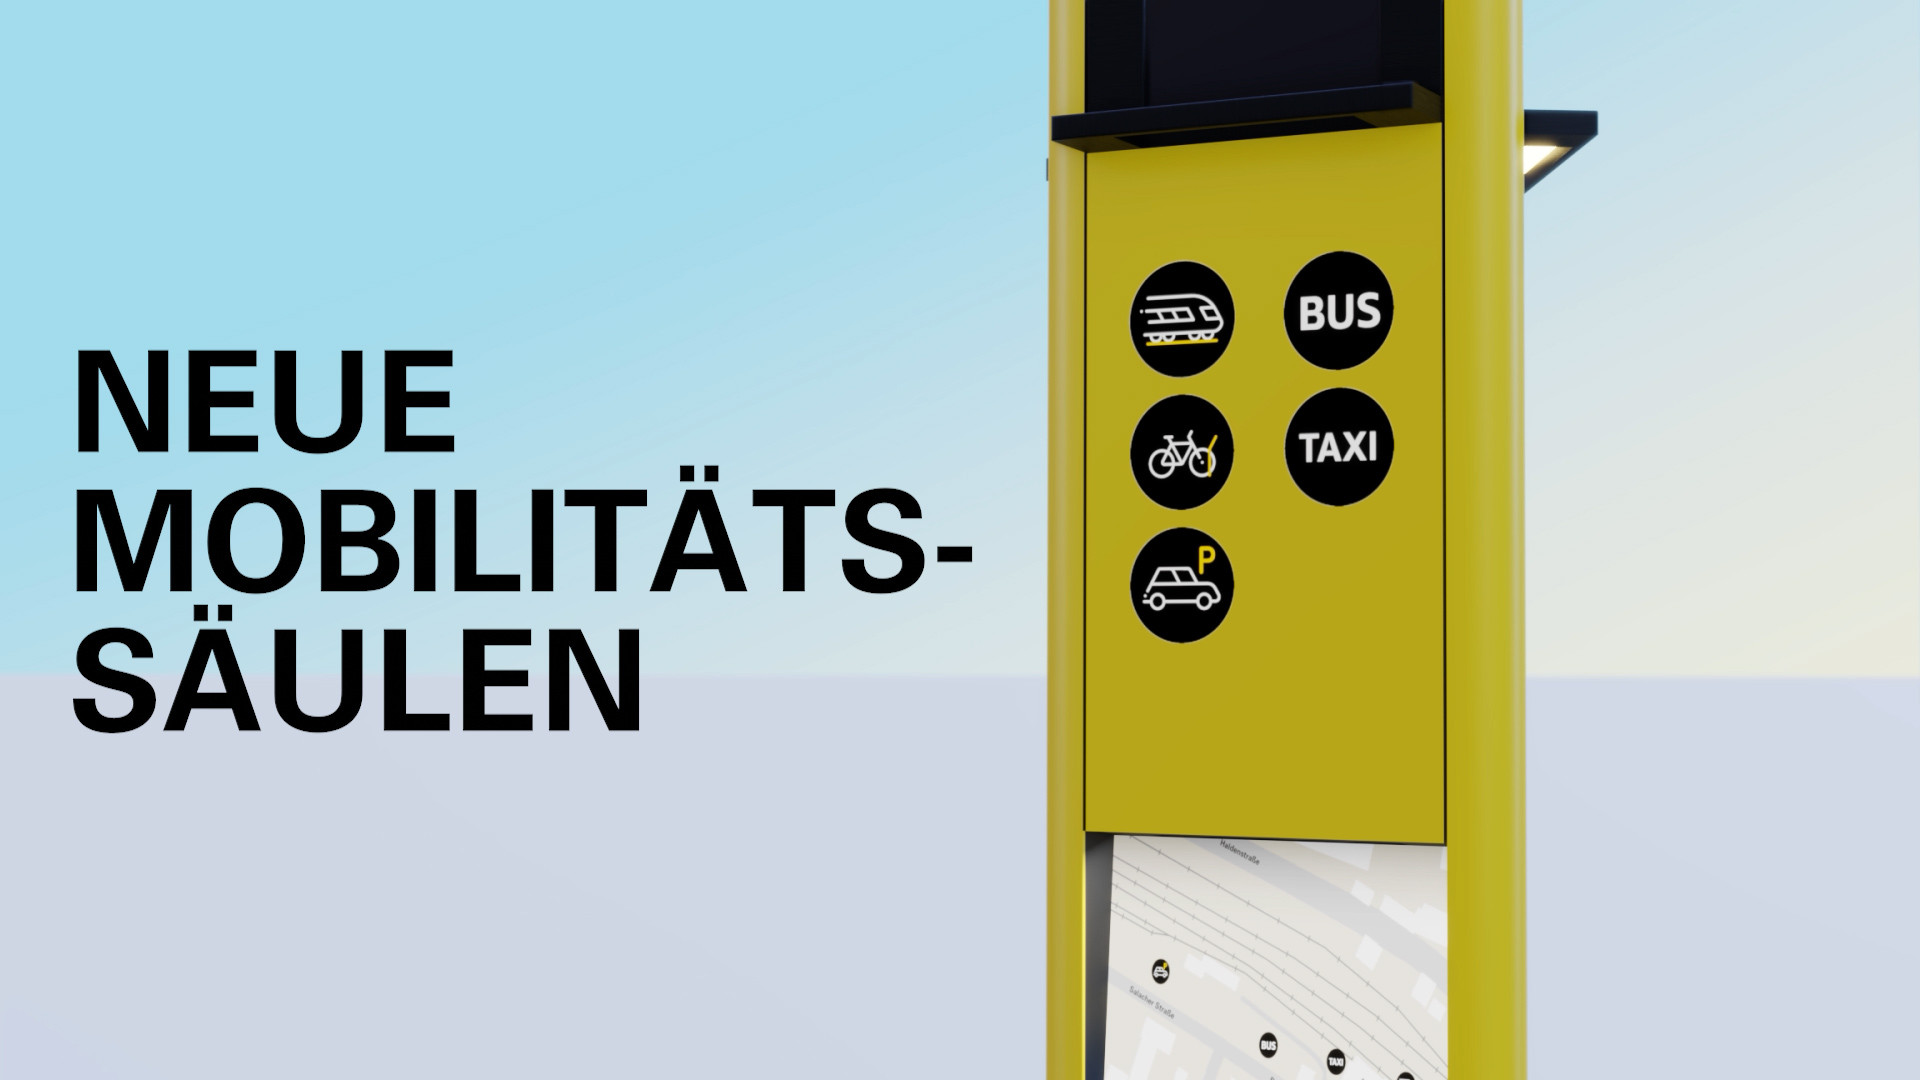 Gelbe Säule mit verschiedenen Symbolen für Rad, S-Bahn, Taxi, Bike-Sharing und Car-Sharing.